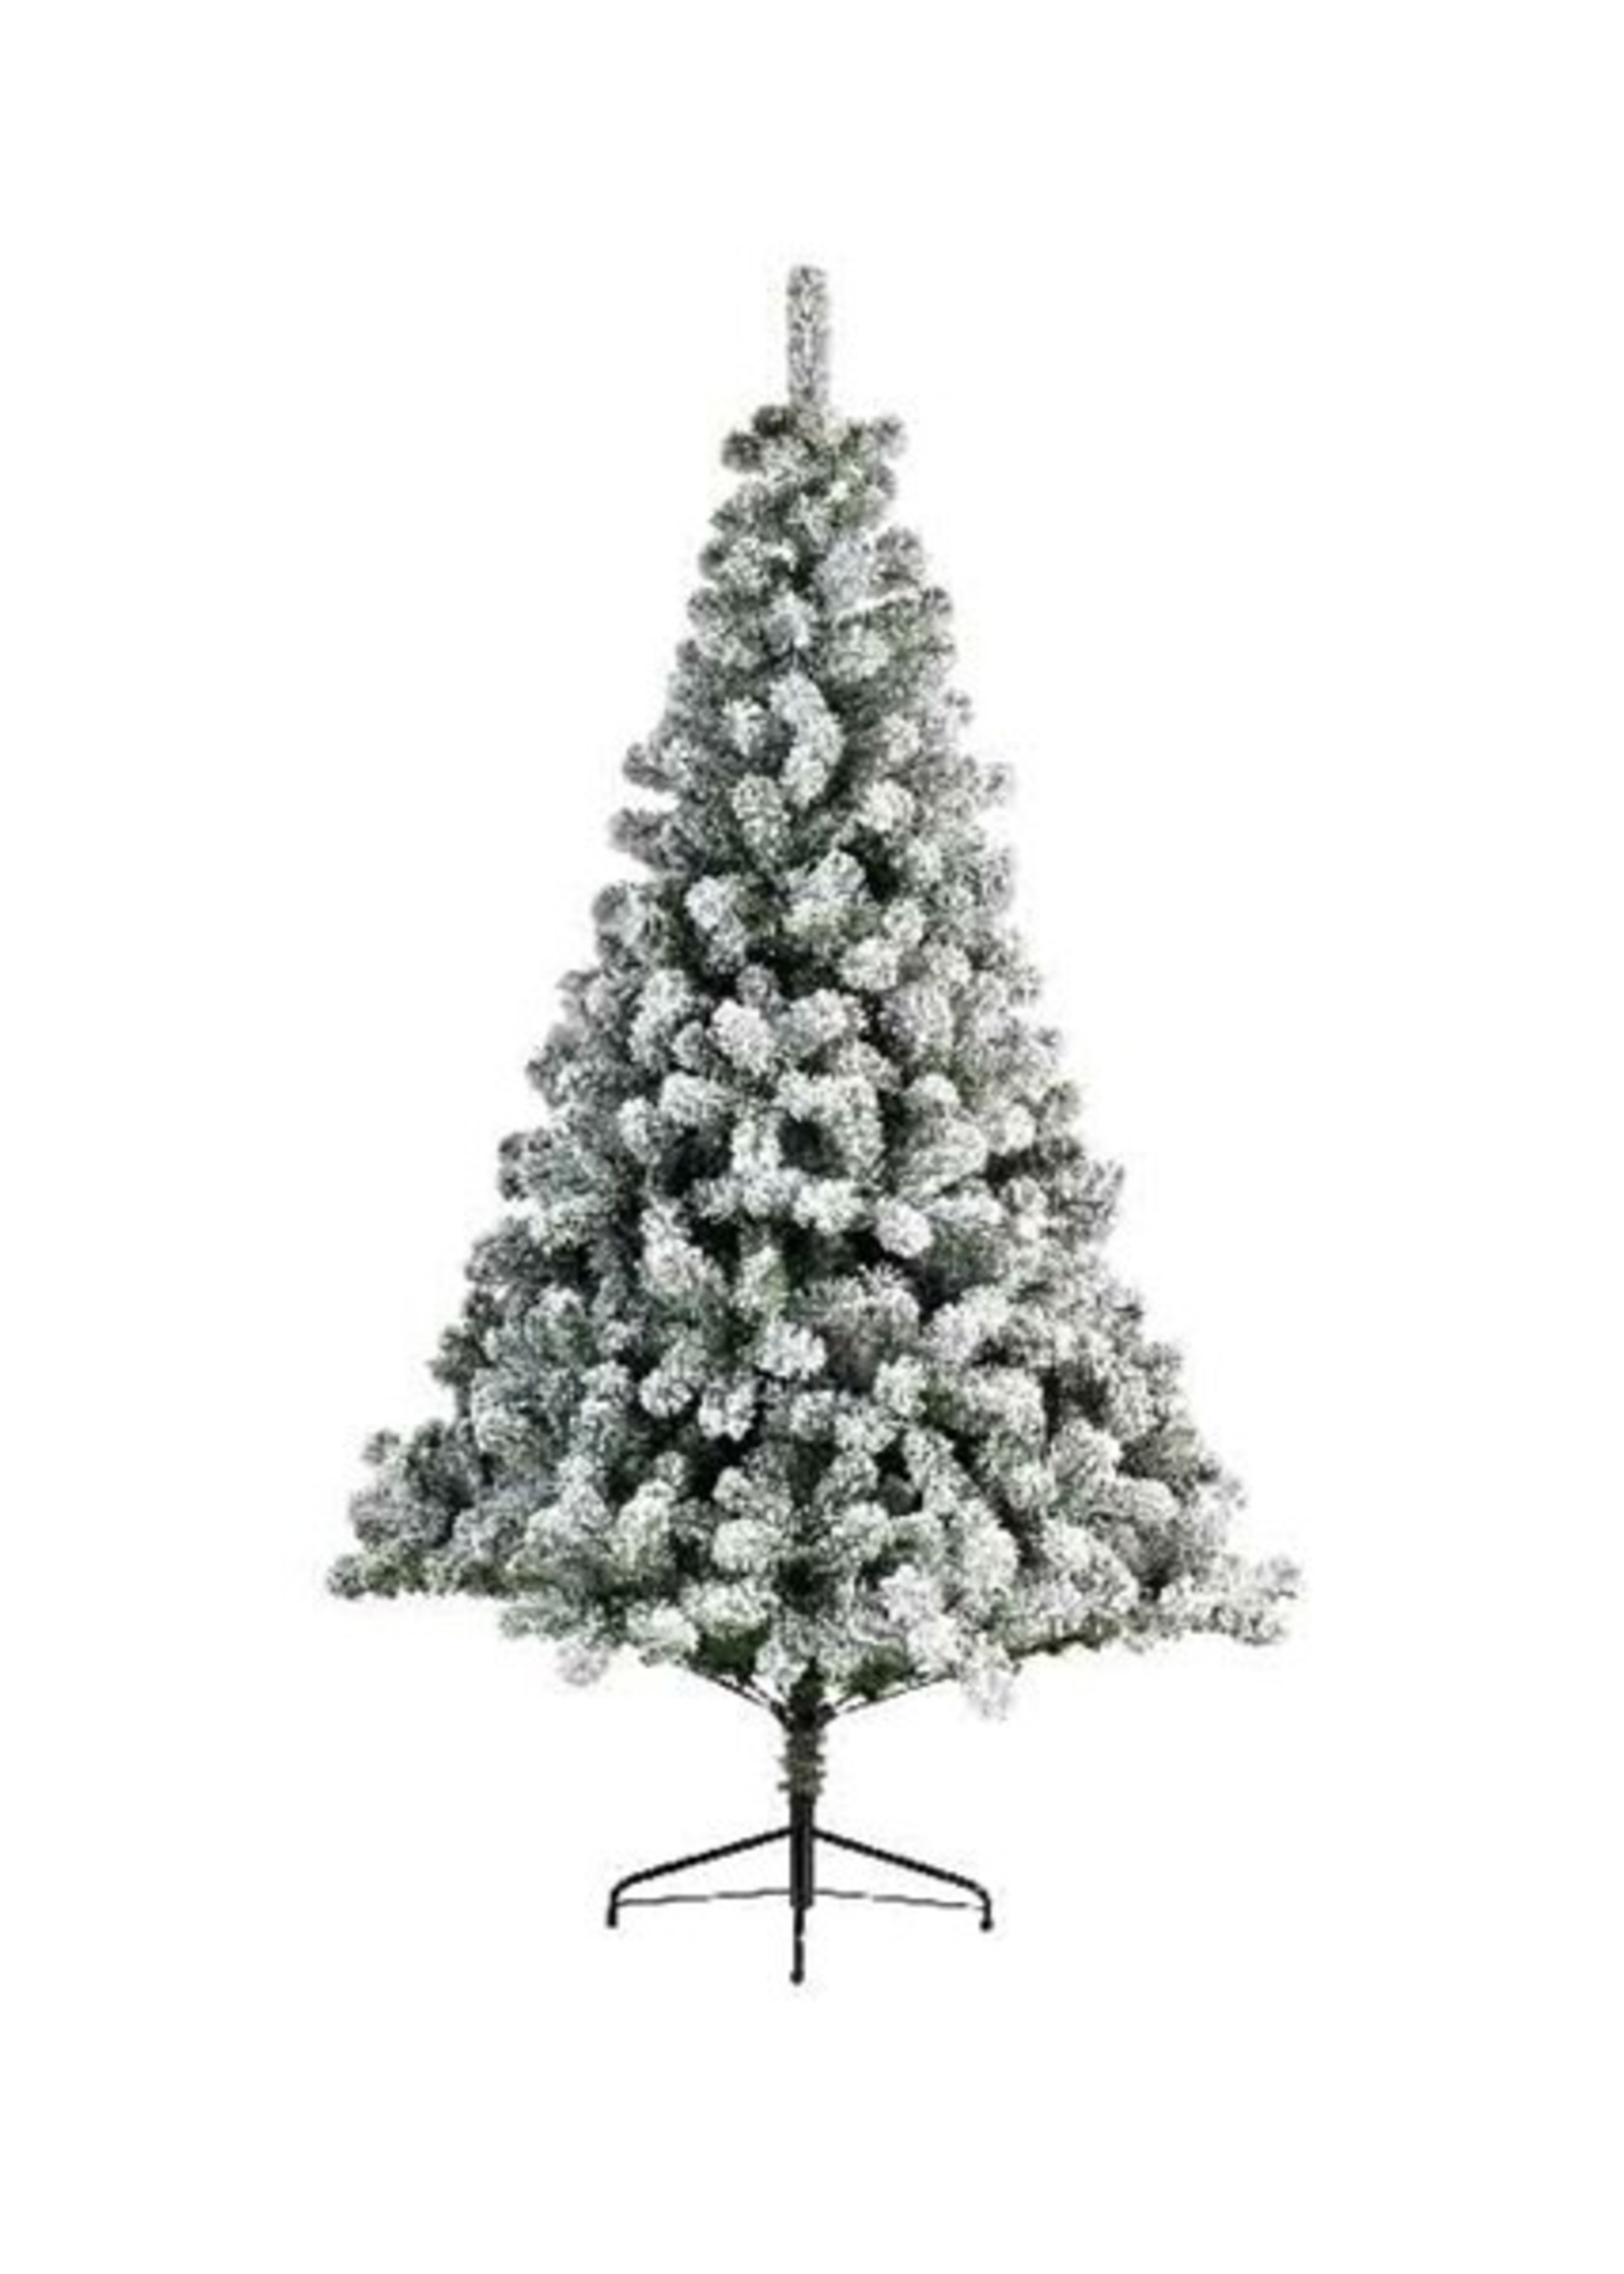 Everlands Kunstkerstboom Imperial Pine besneeuwd 150cm hoog verlicht met 170 geintegreerde warmwitte LED lamp